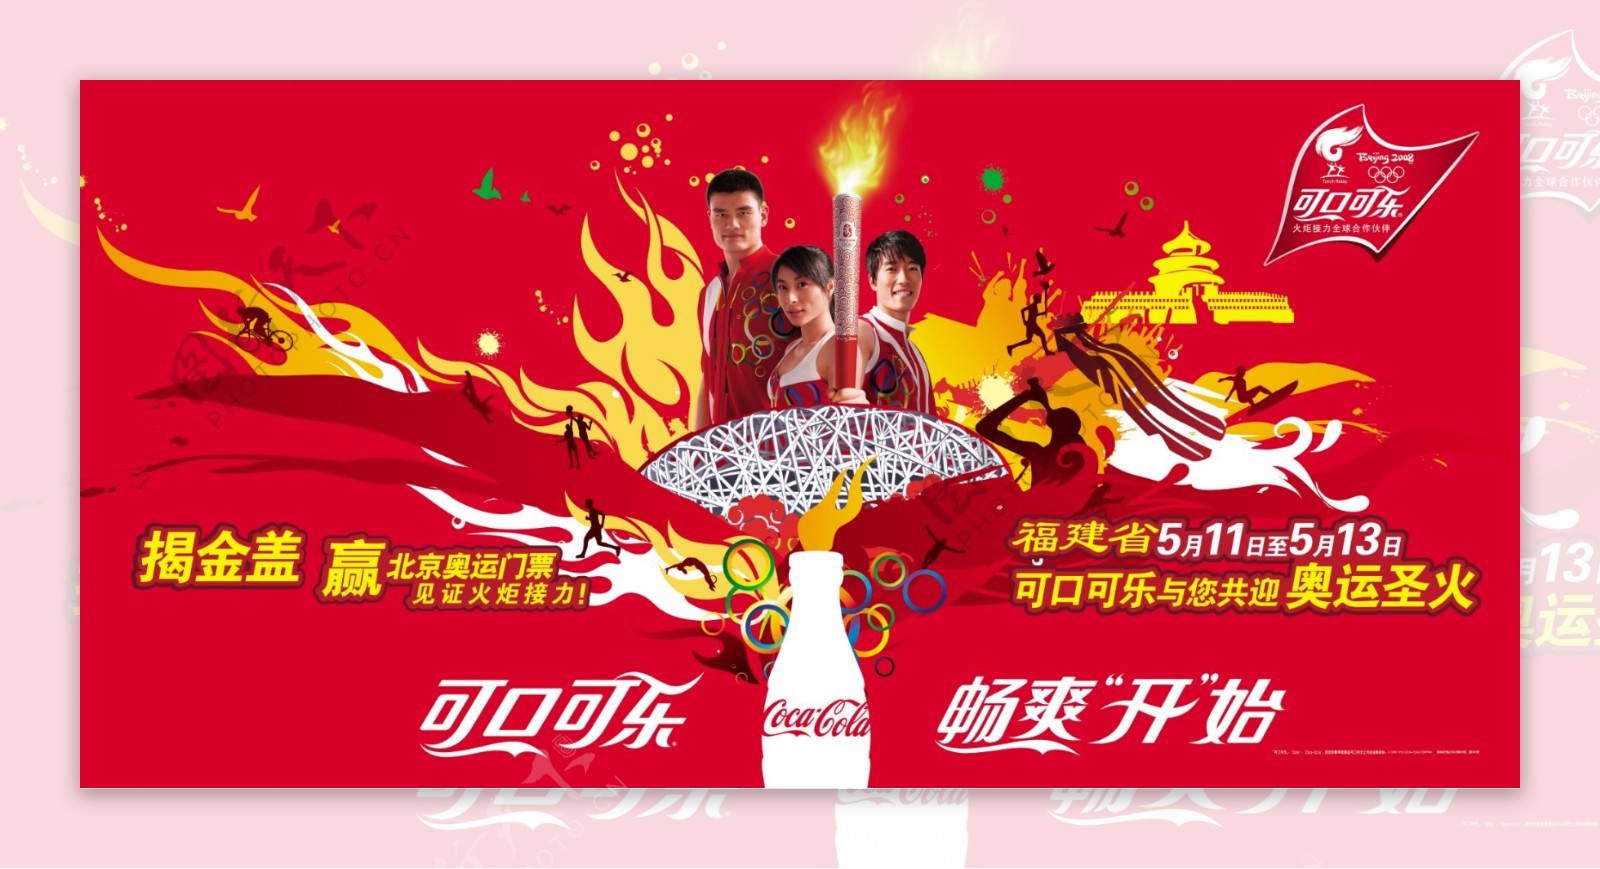 龙腾广告平面广告PSD分层素材源文件饮料可口可乐奥运奖励明星